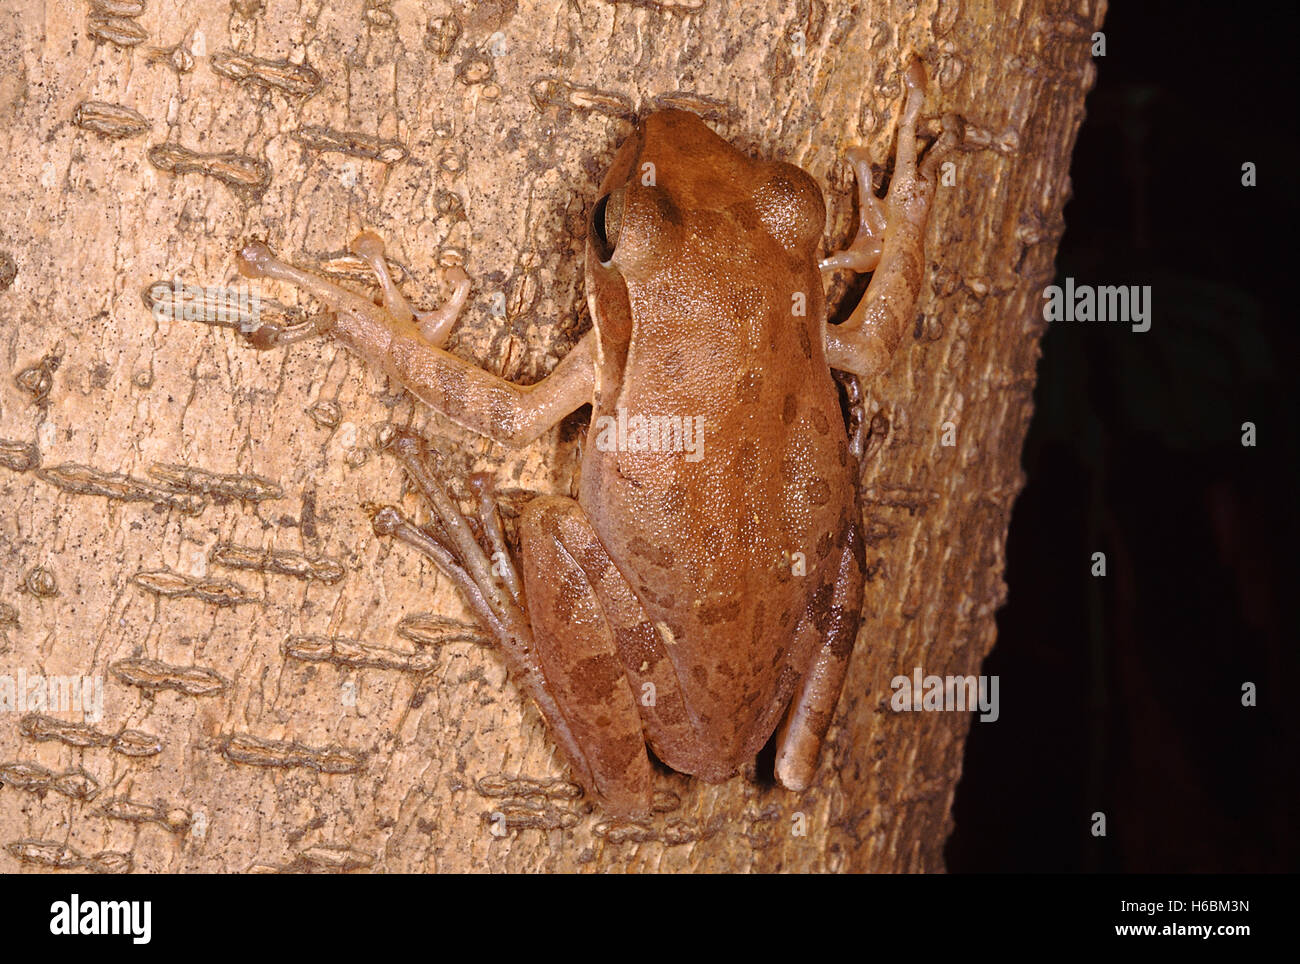 Polypedates maculatus. gemeinsamen Laubfrosch. Eine mittelgroße Frosch, der in feuchten Laubwäldern Waldflächen gefunden wird. Es lebt auf Bäumen Stockfoto